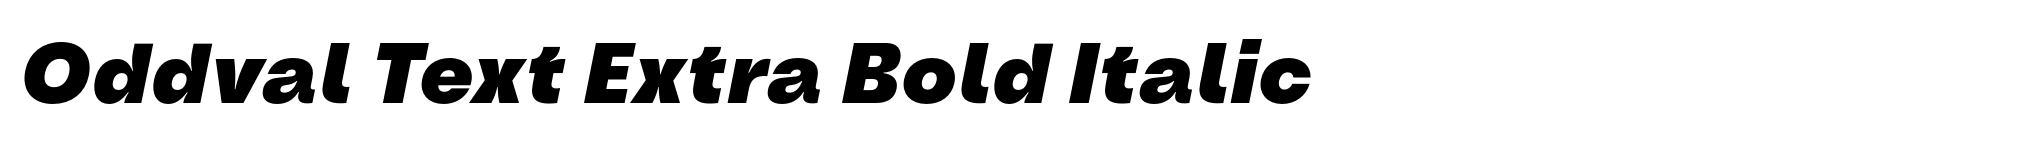 Oddval Text Extra Bold Italic image